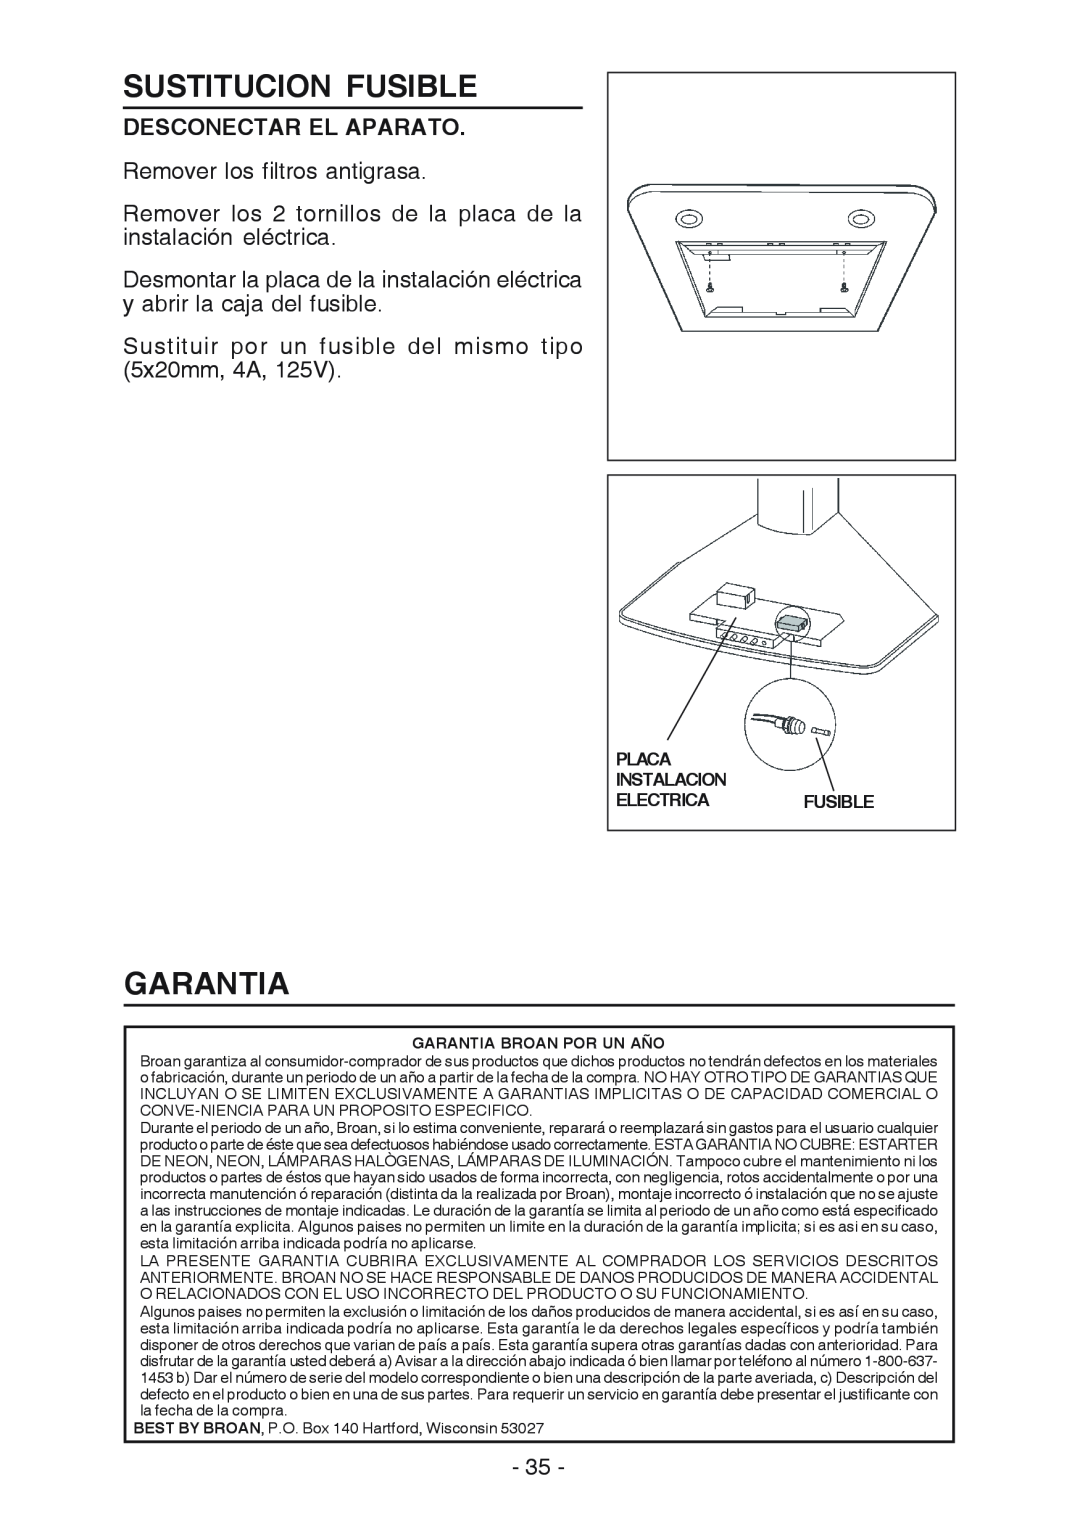 Best K3139 manual Sustitucion Fusible, Garantia, Desconectar El Aparato 